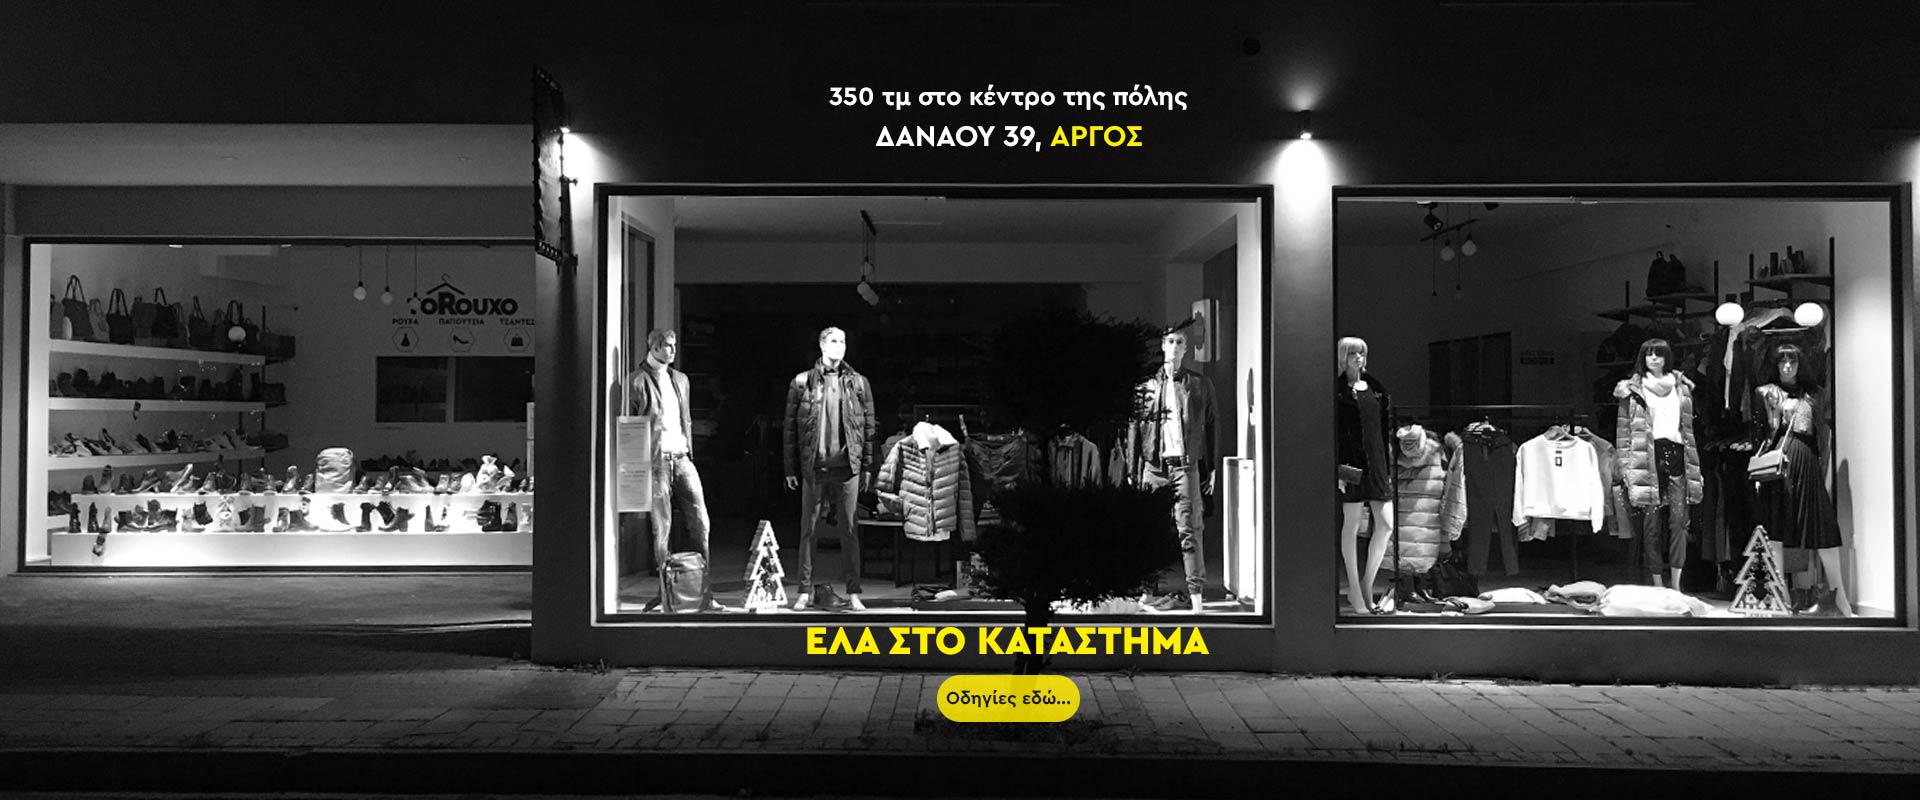 Έλα στο κατάστημα στο Άργος, ρούχα ανδρικά, toRouxo.gr